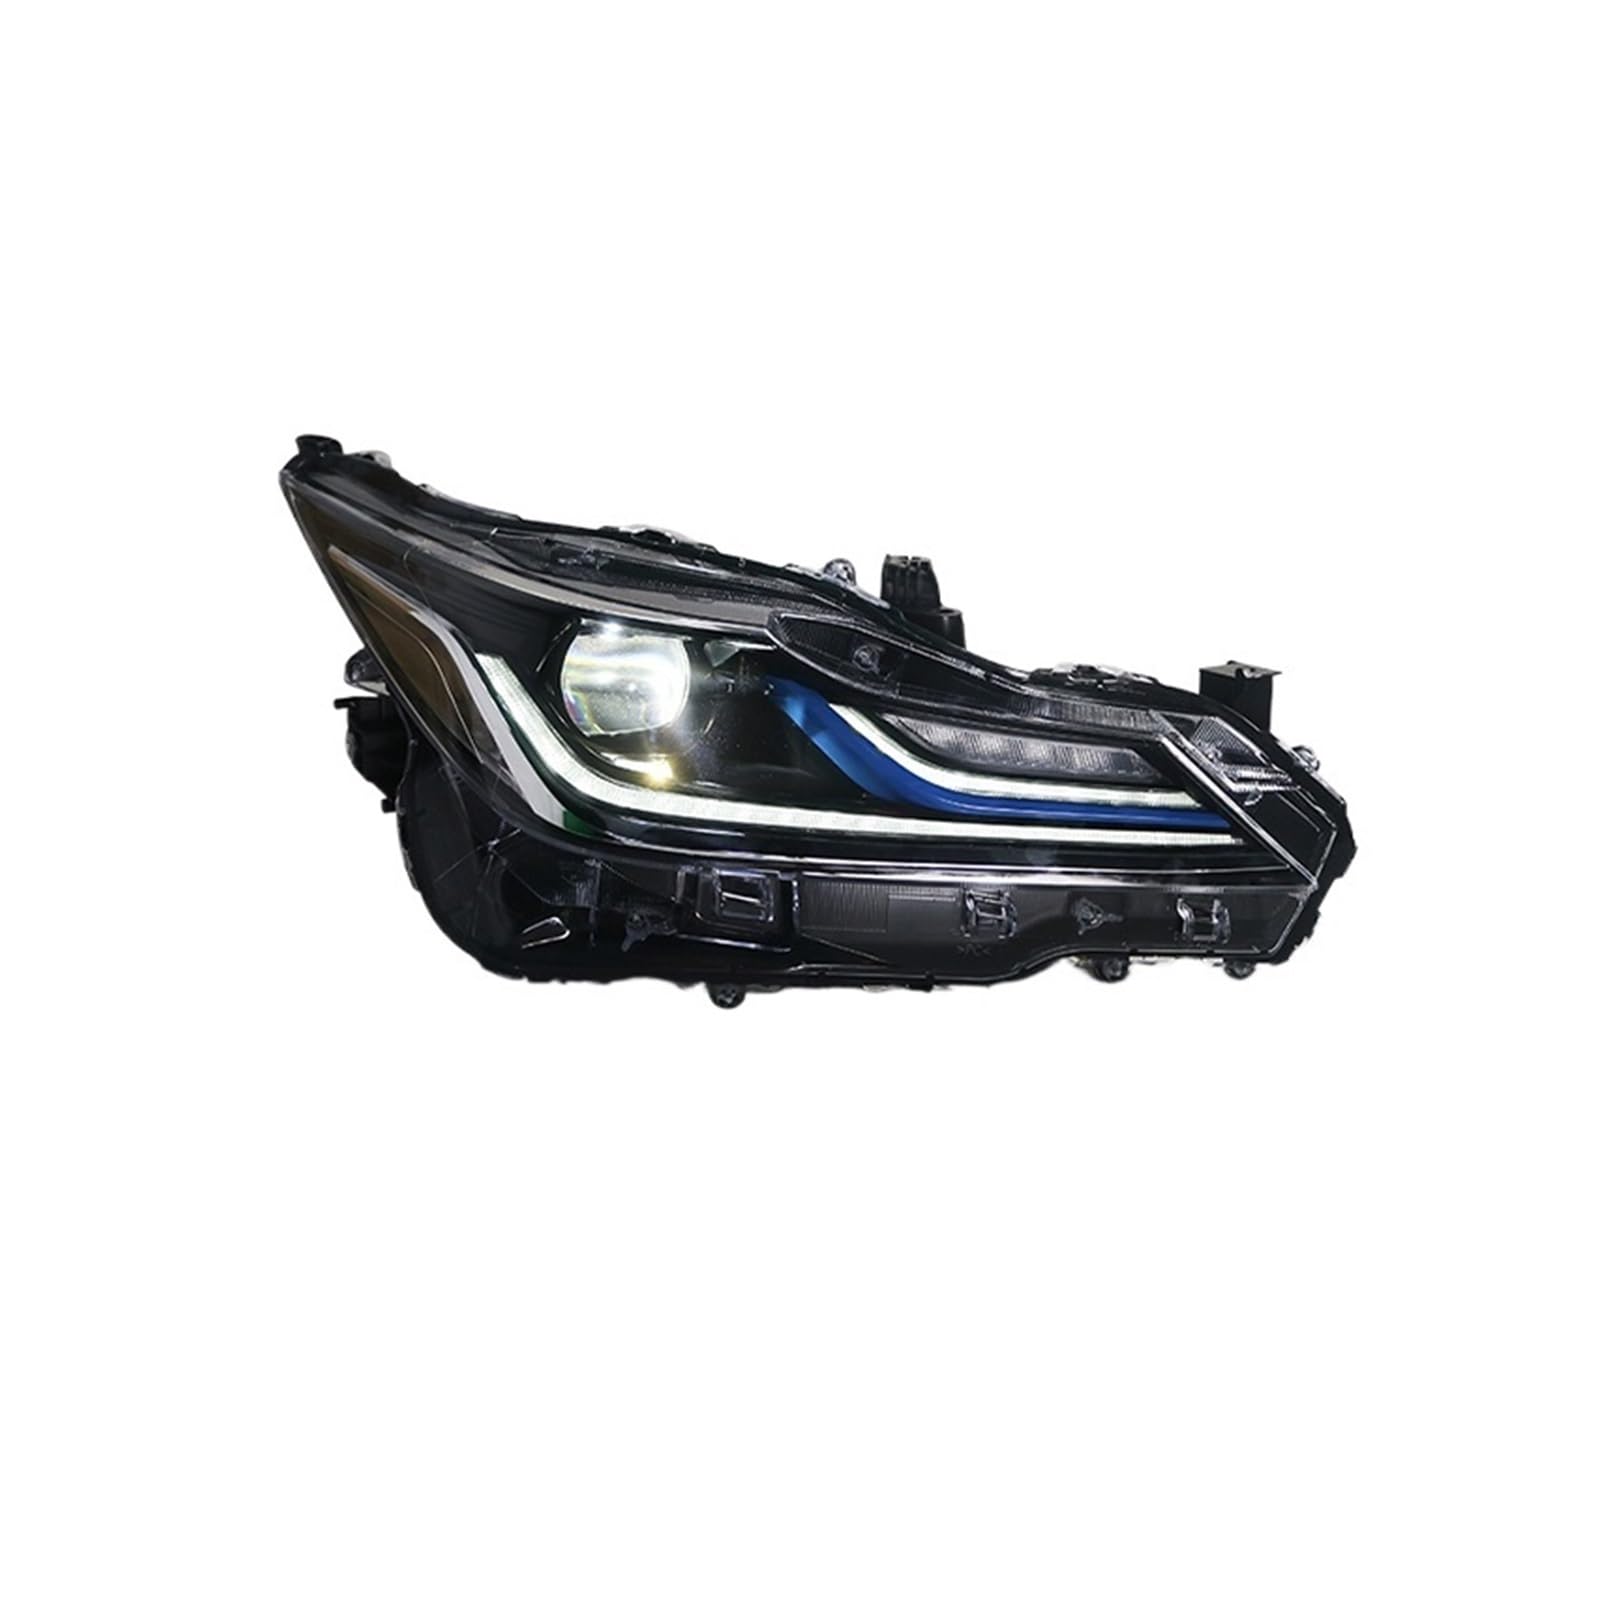 LIINYTG Scheinwerfer Kompatibel for Toyota Corolla 2019 2020 2021 Scheinwerfer LED DRL LED Blinker LED Abblendlicht Alle LED Scheinwerfer for Corolla von LIINYTG